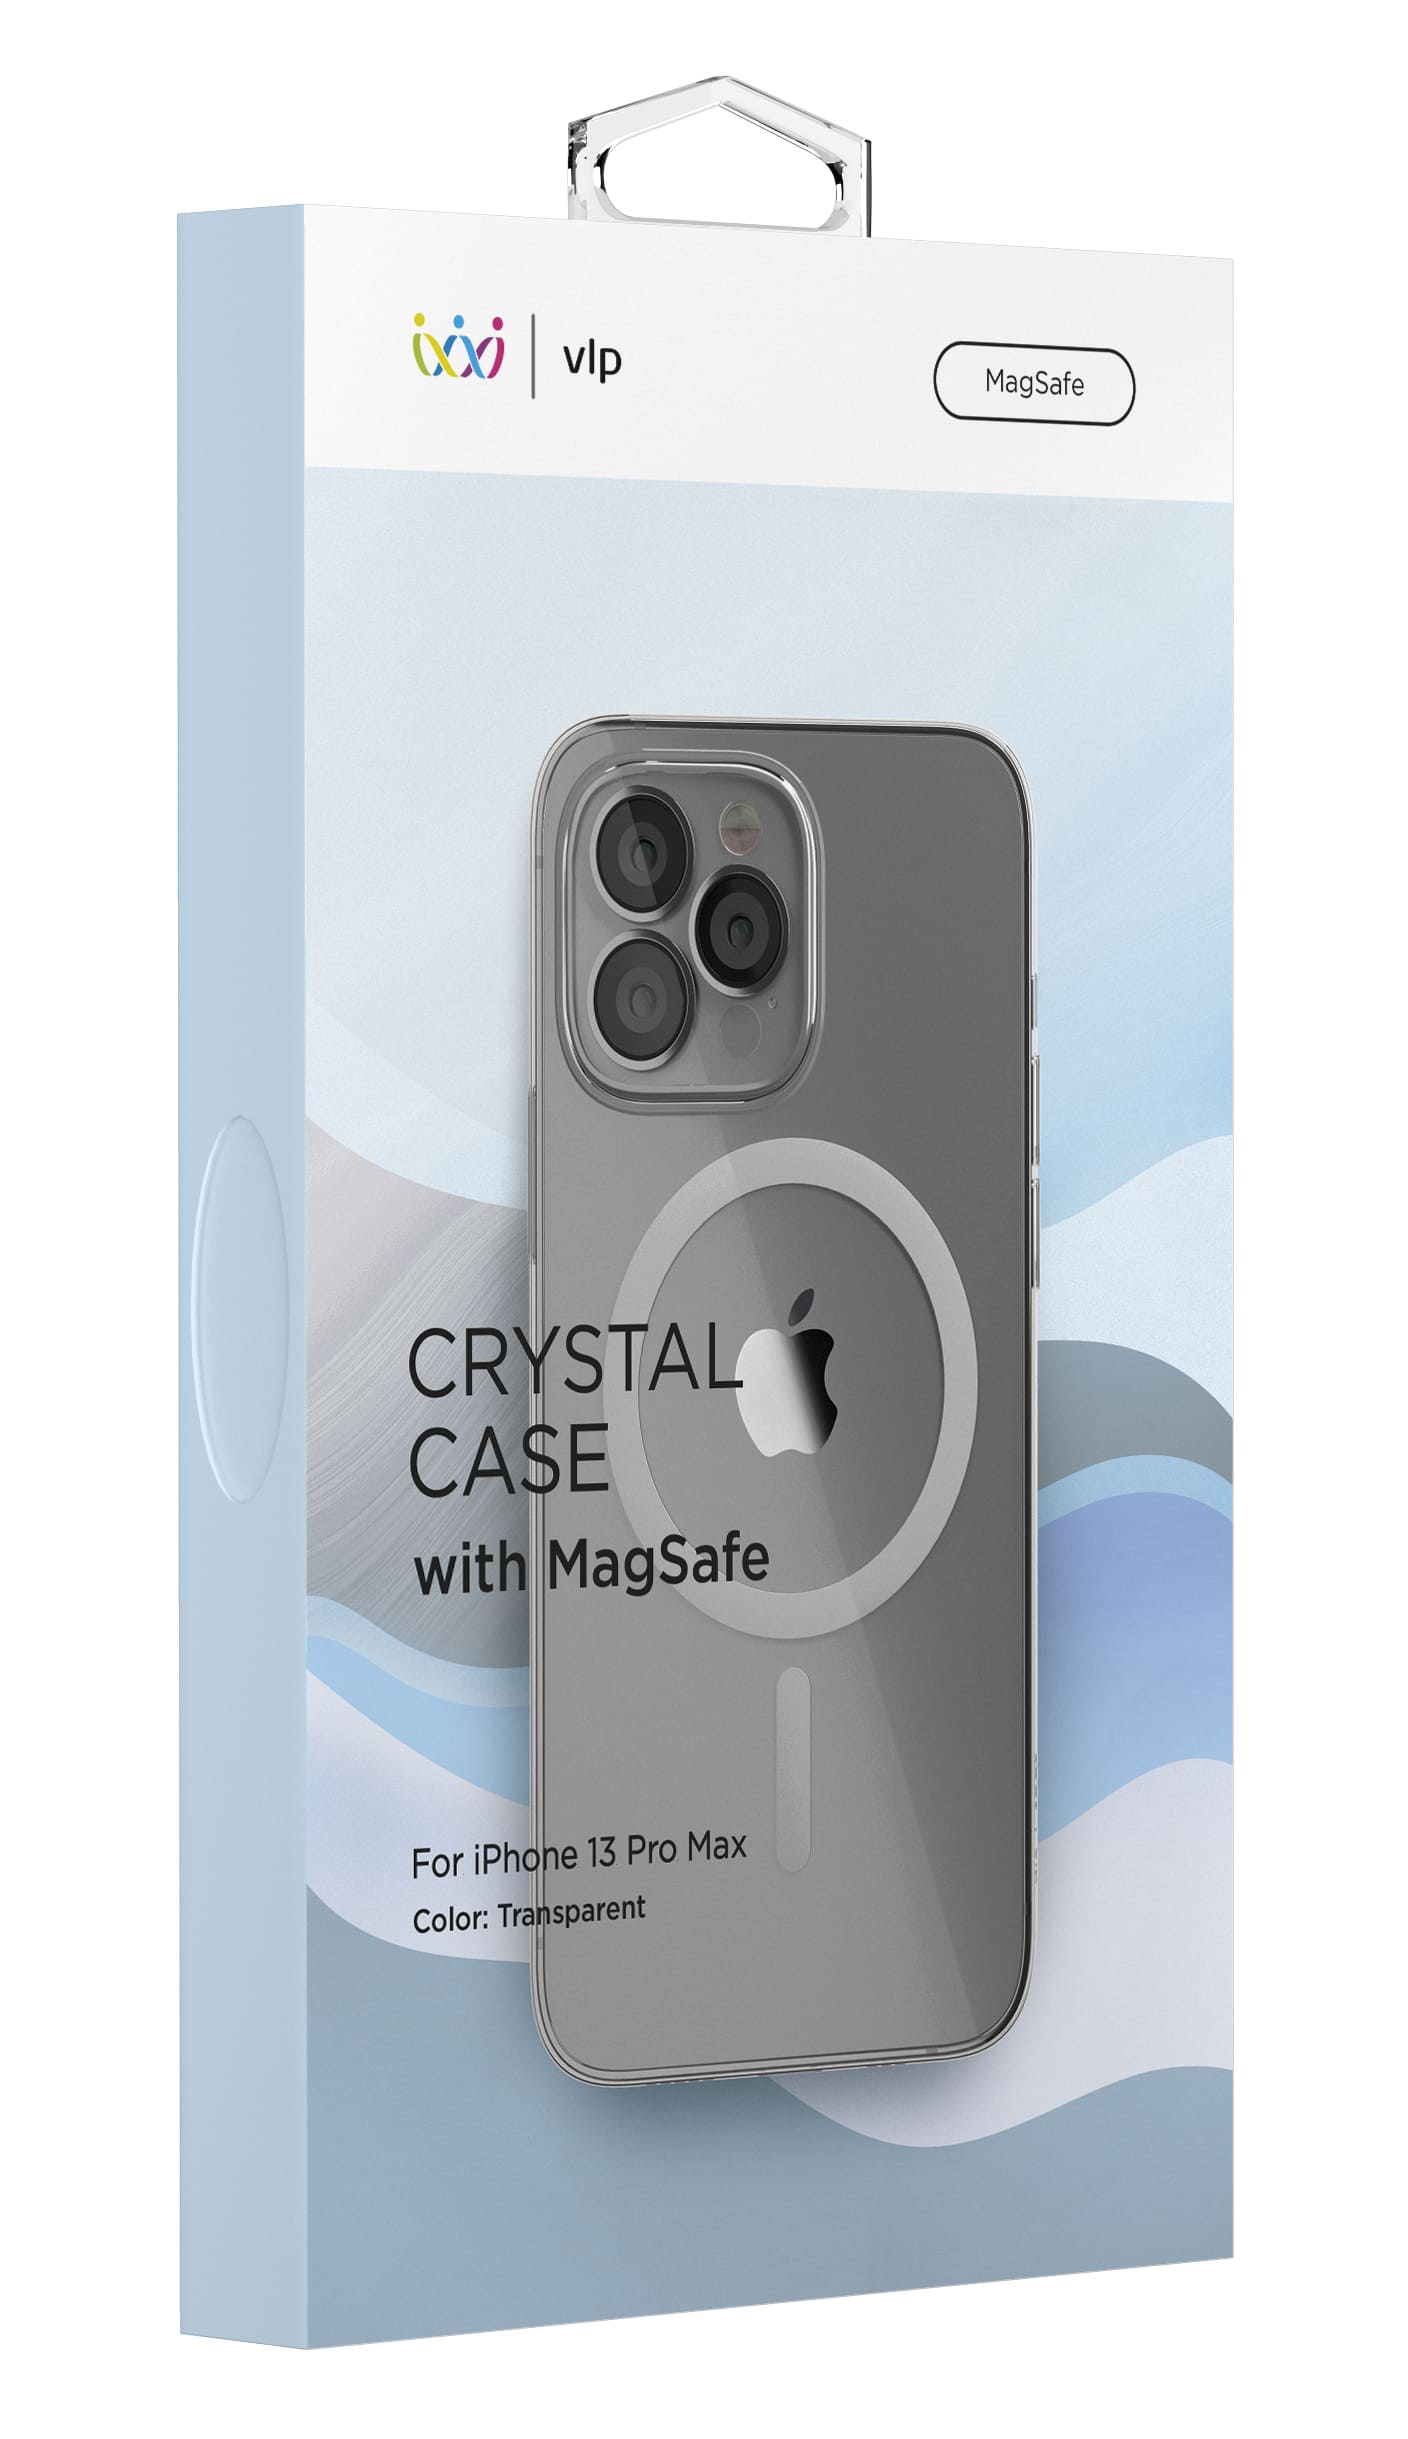 Фото — Чехол защитный vlp Crystal case with MagSafe для iPhone 13 Pro Max, прозрачный